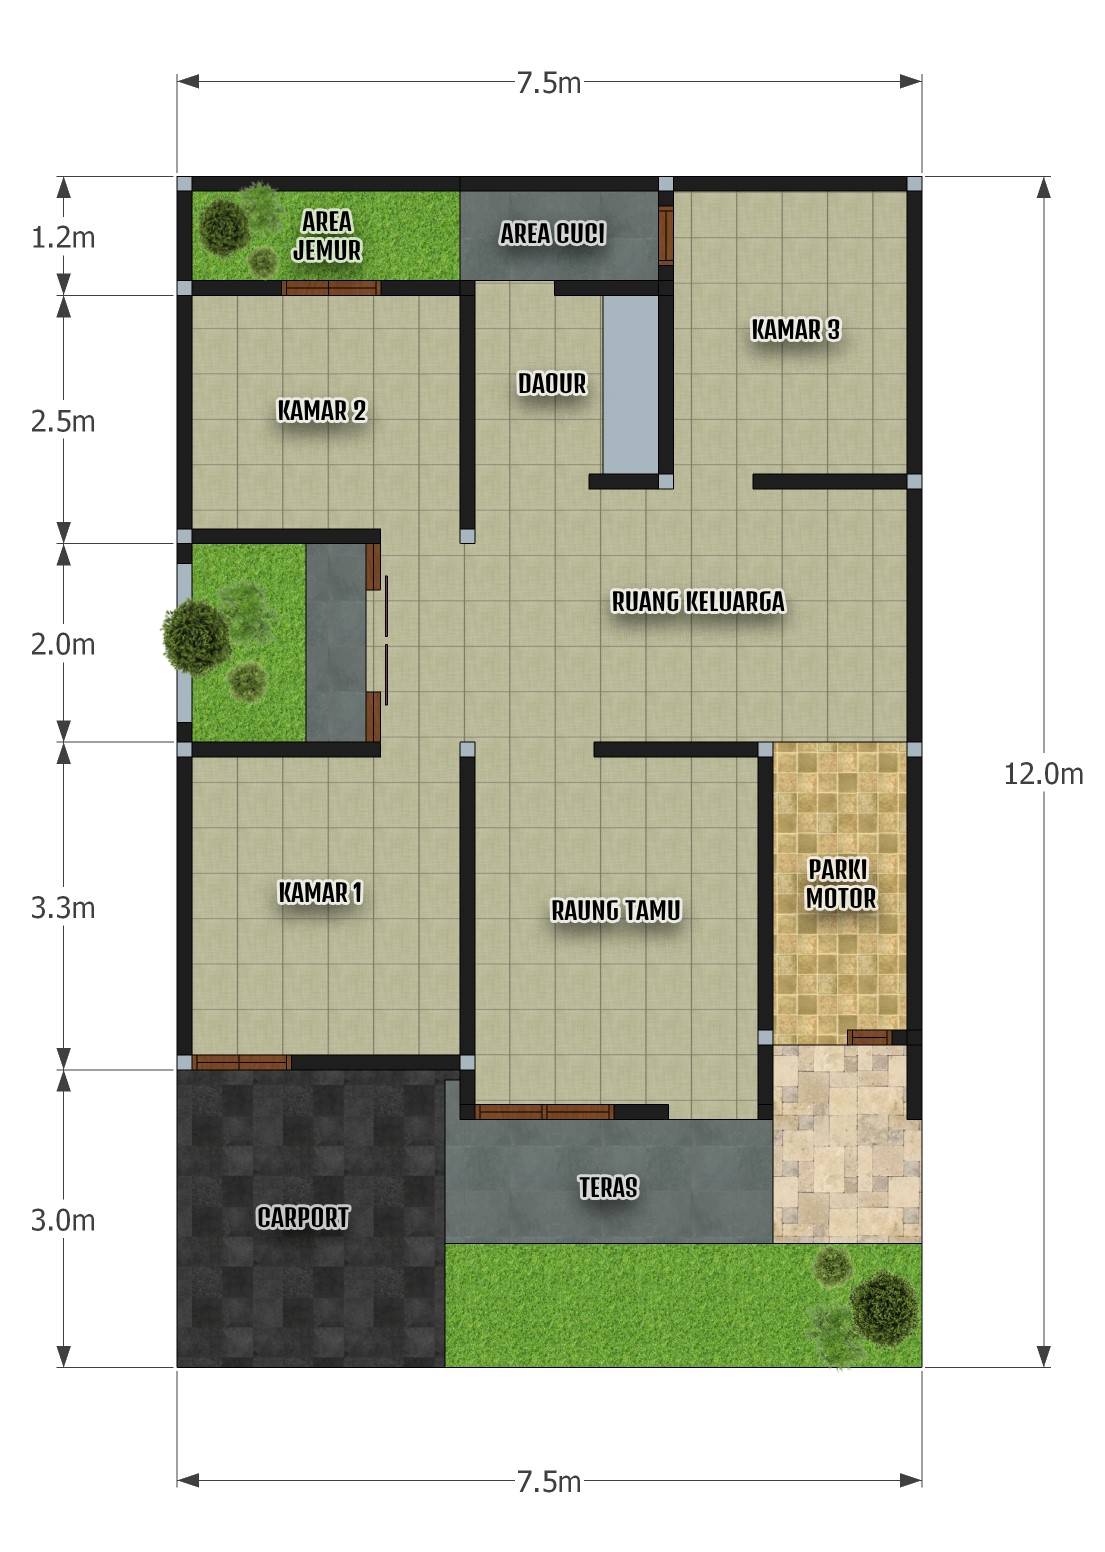 Rumah minimalis 7.5x12 3 Kamar Tidur - DESAIN RUMAH MINIMALIS - Denah Rumah Ukuran 8x12 Kamar 3